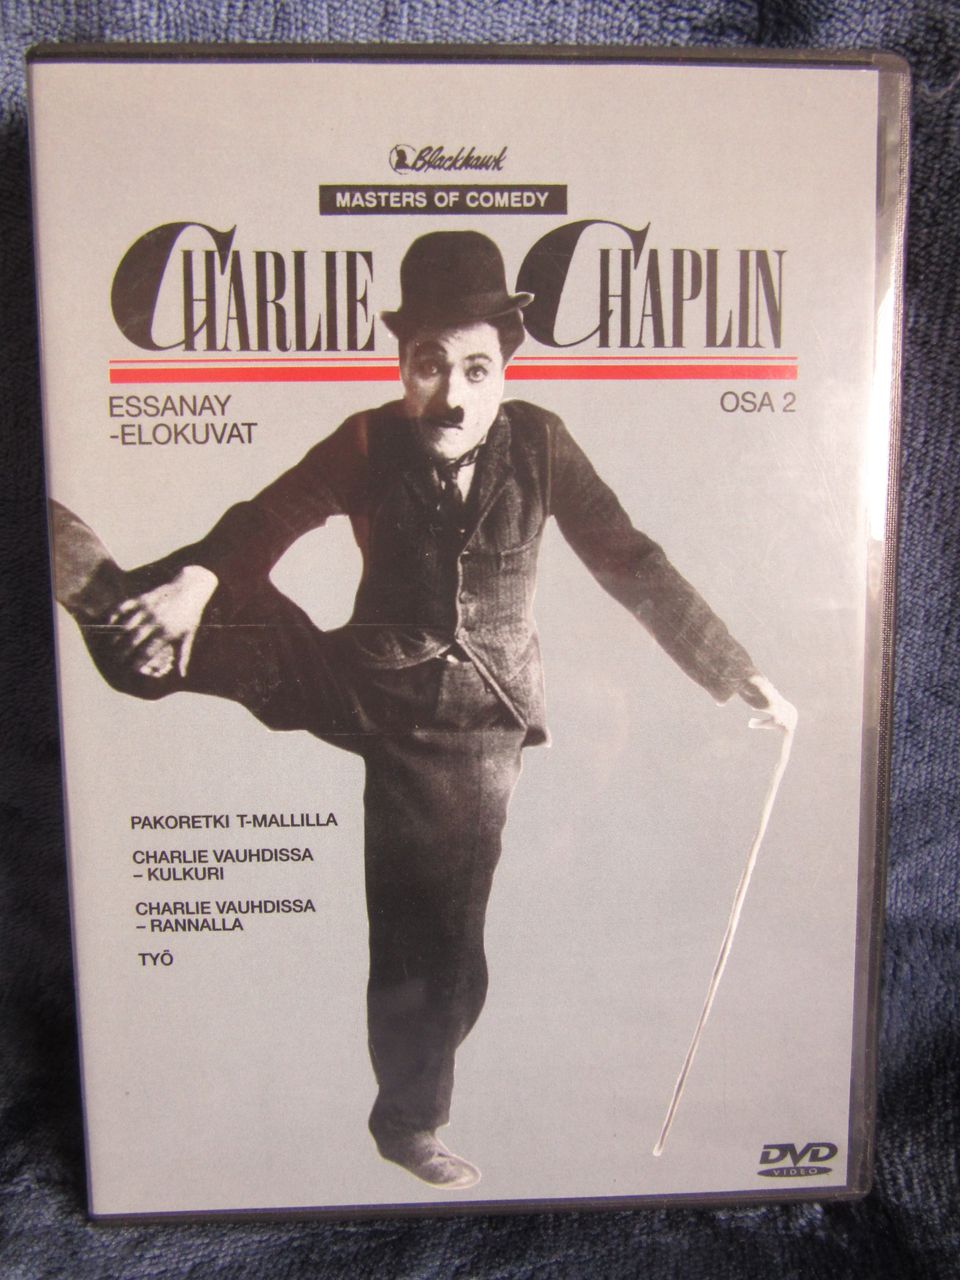 Charlie Chaplin osa 2 dvd